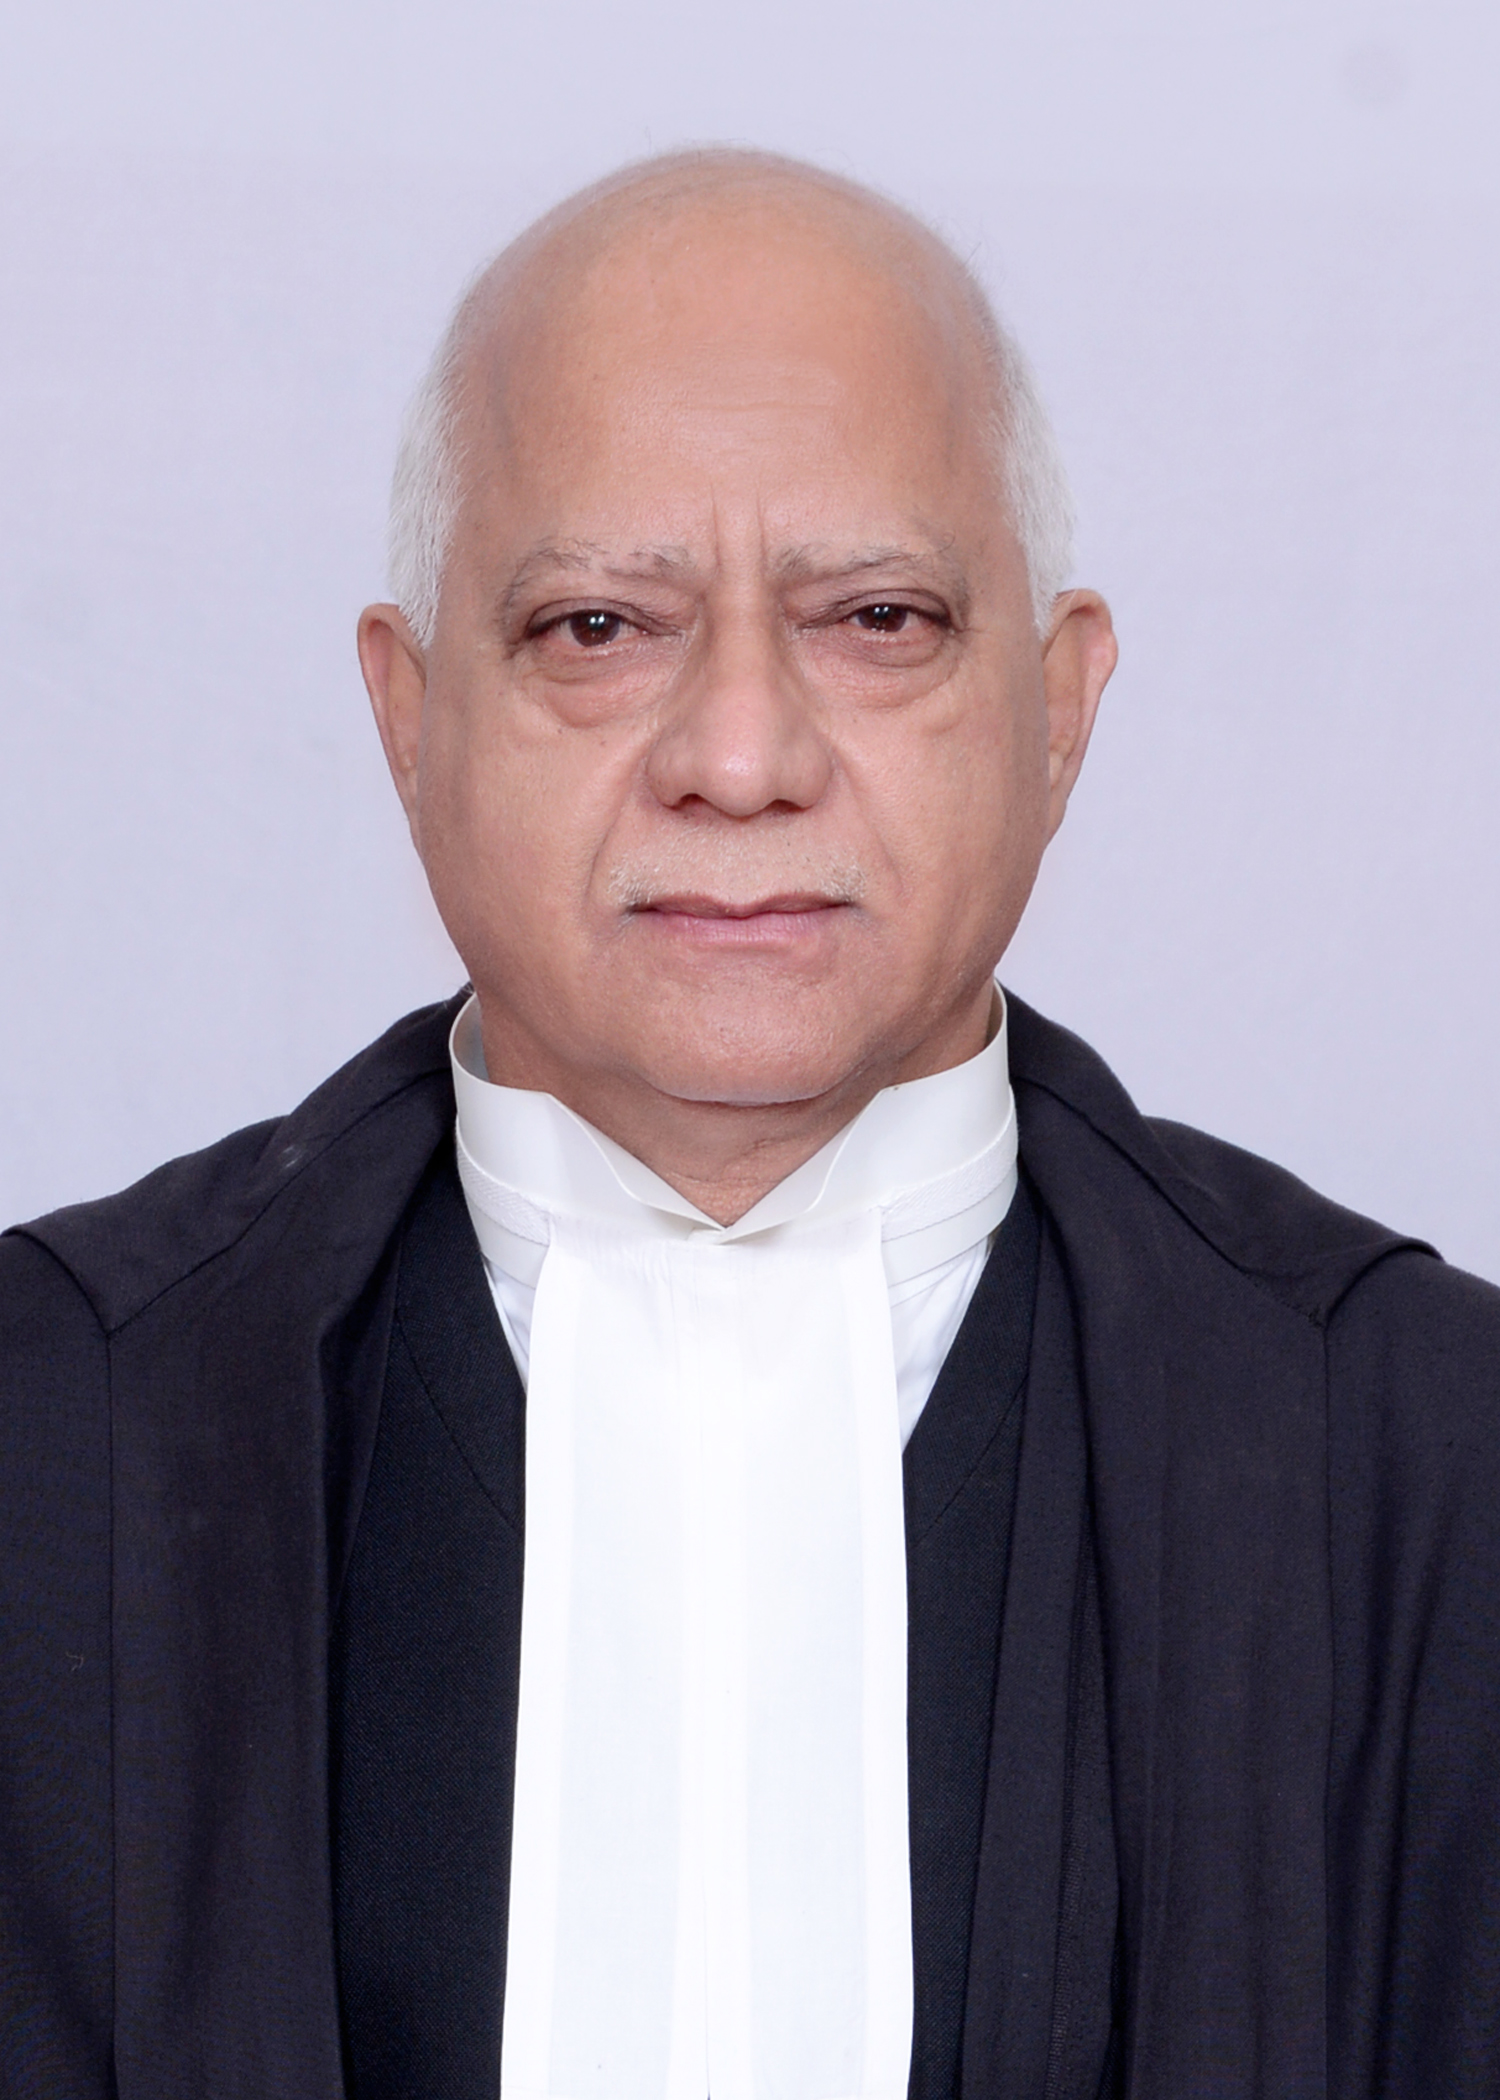 Hon’ble Mr. Justice Arun Tandon (Sr. Judge, Alld.)